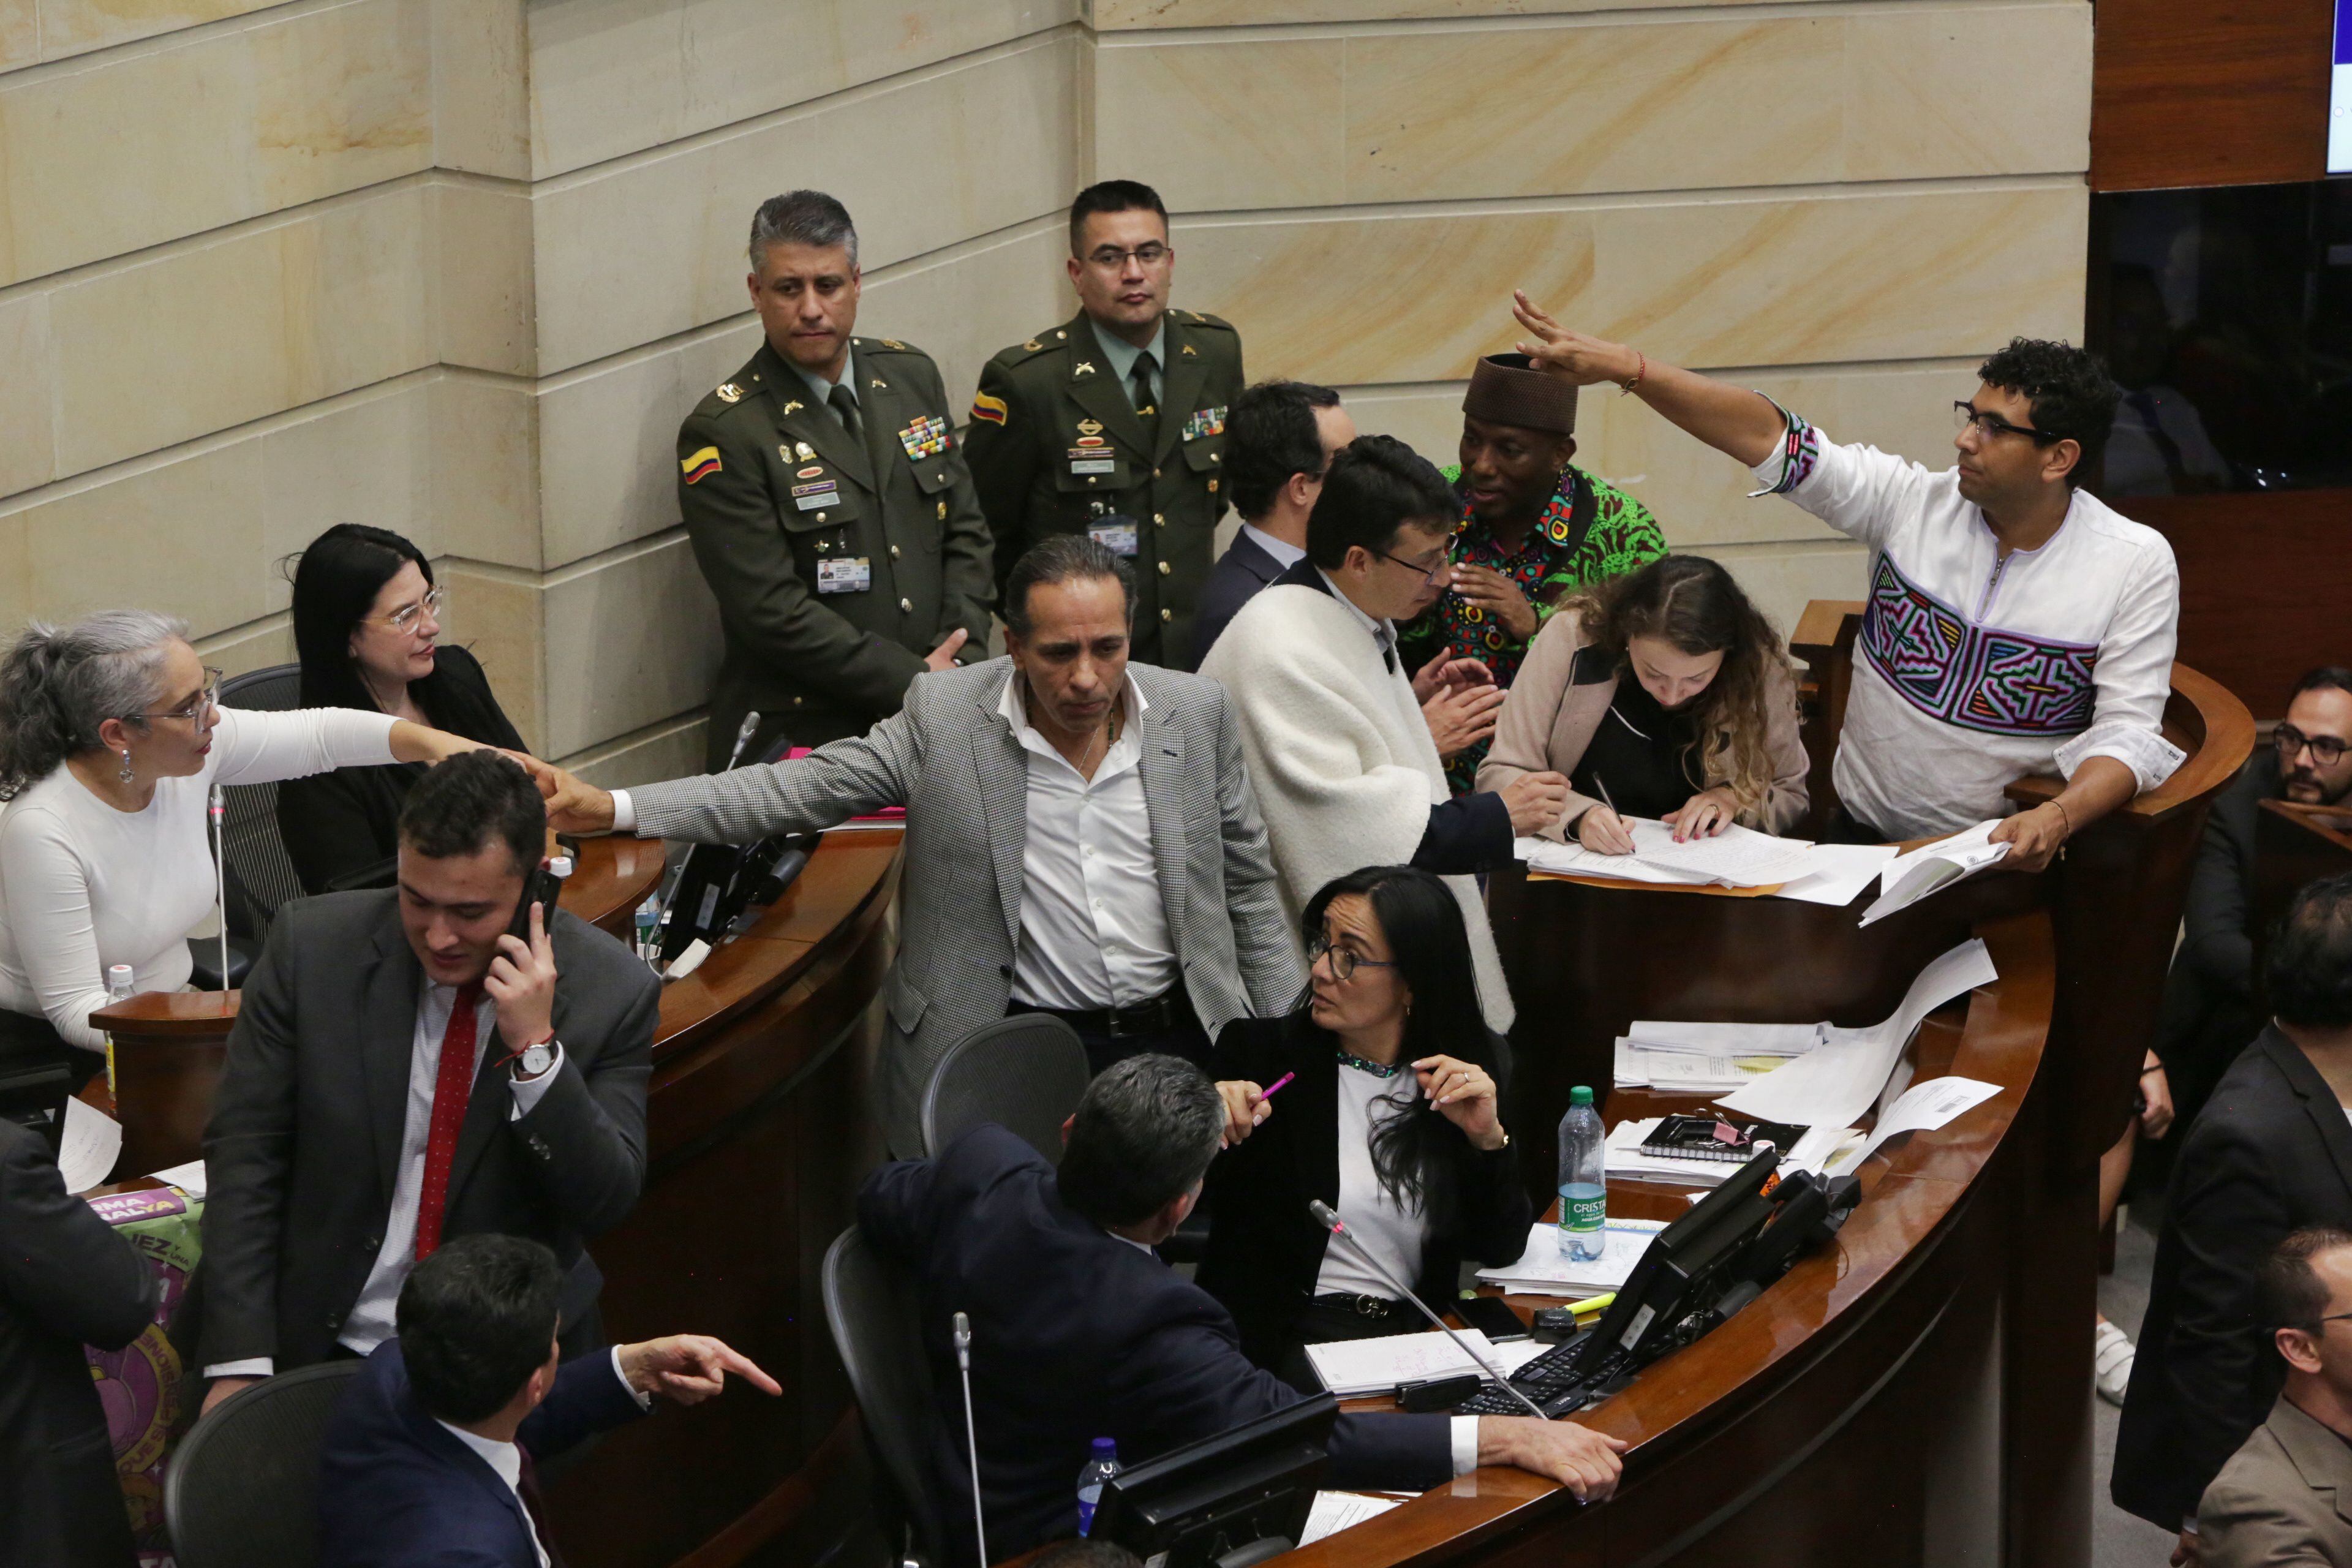 daniel briceño estalló contra el partido verde tras aprobación de reforma pensional: “pelea entre verdes y petro es pura pantomima”